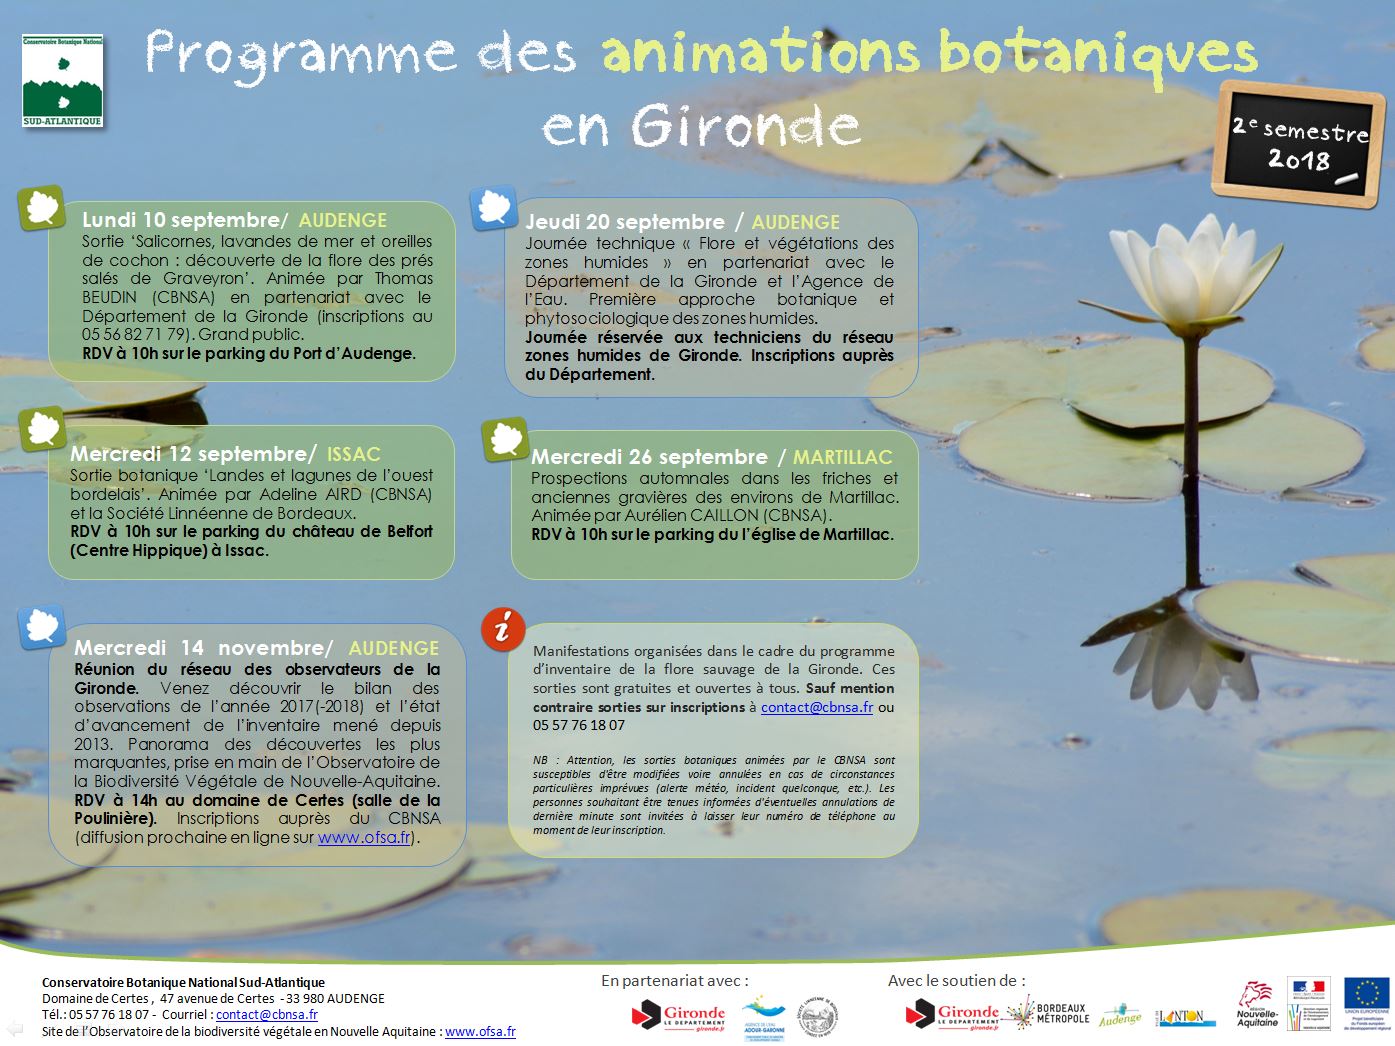 Programme des animations botaniques en Gironde - Automne 2018